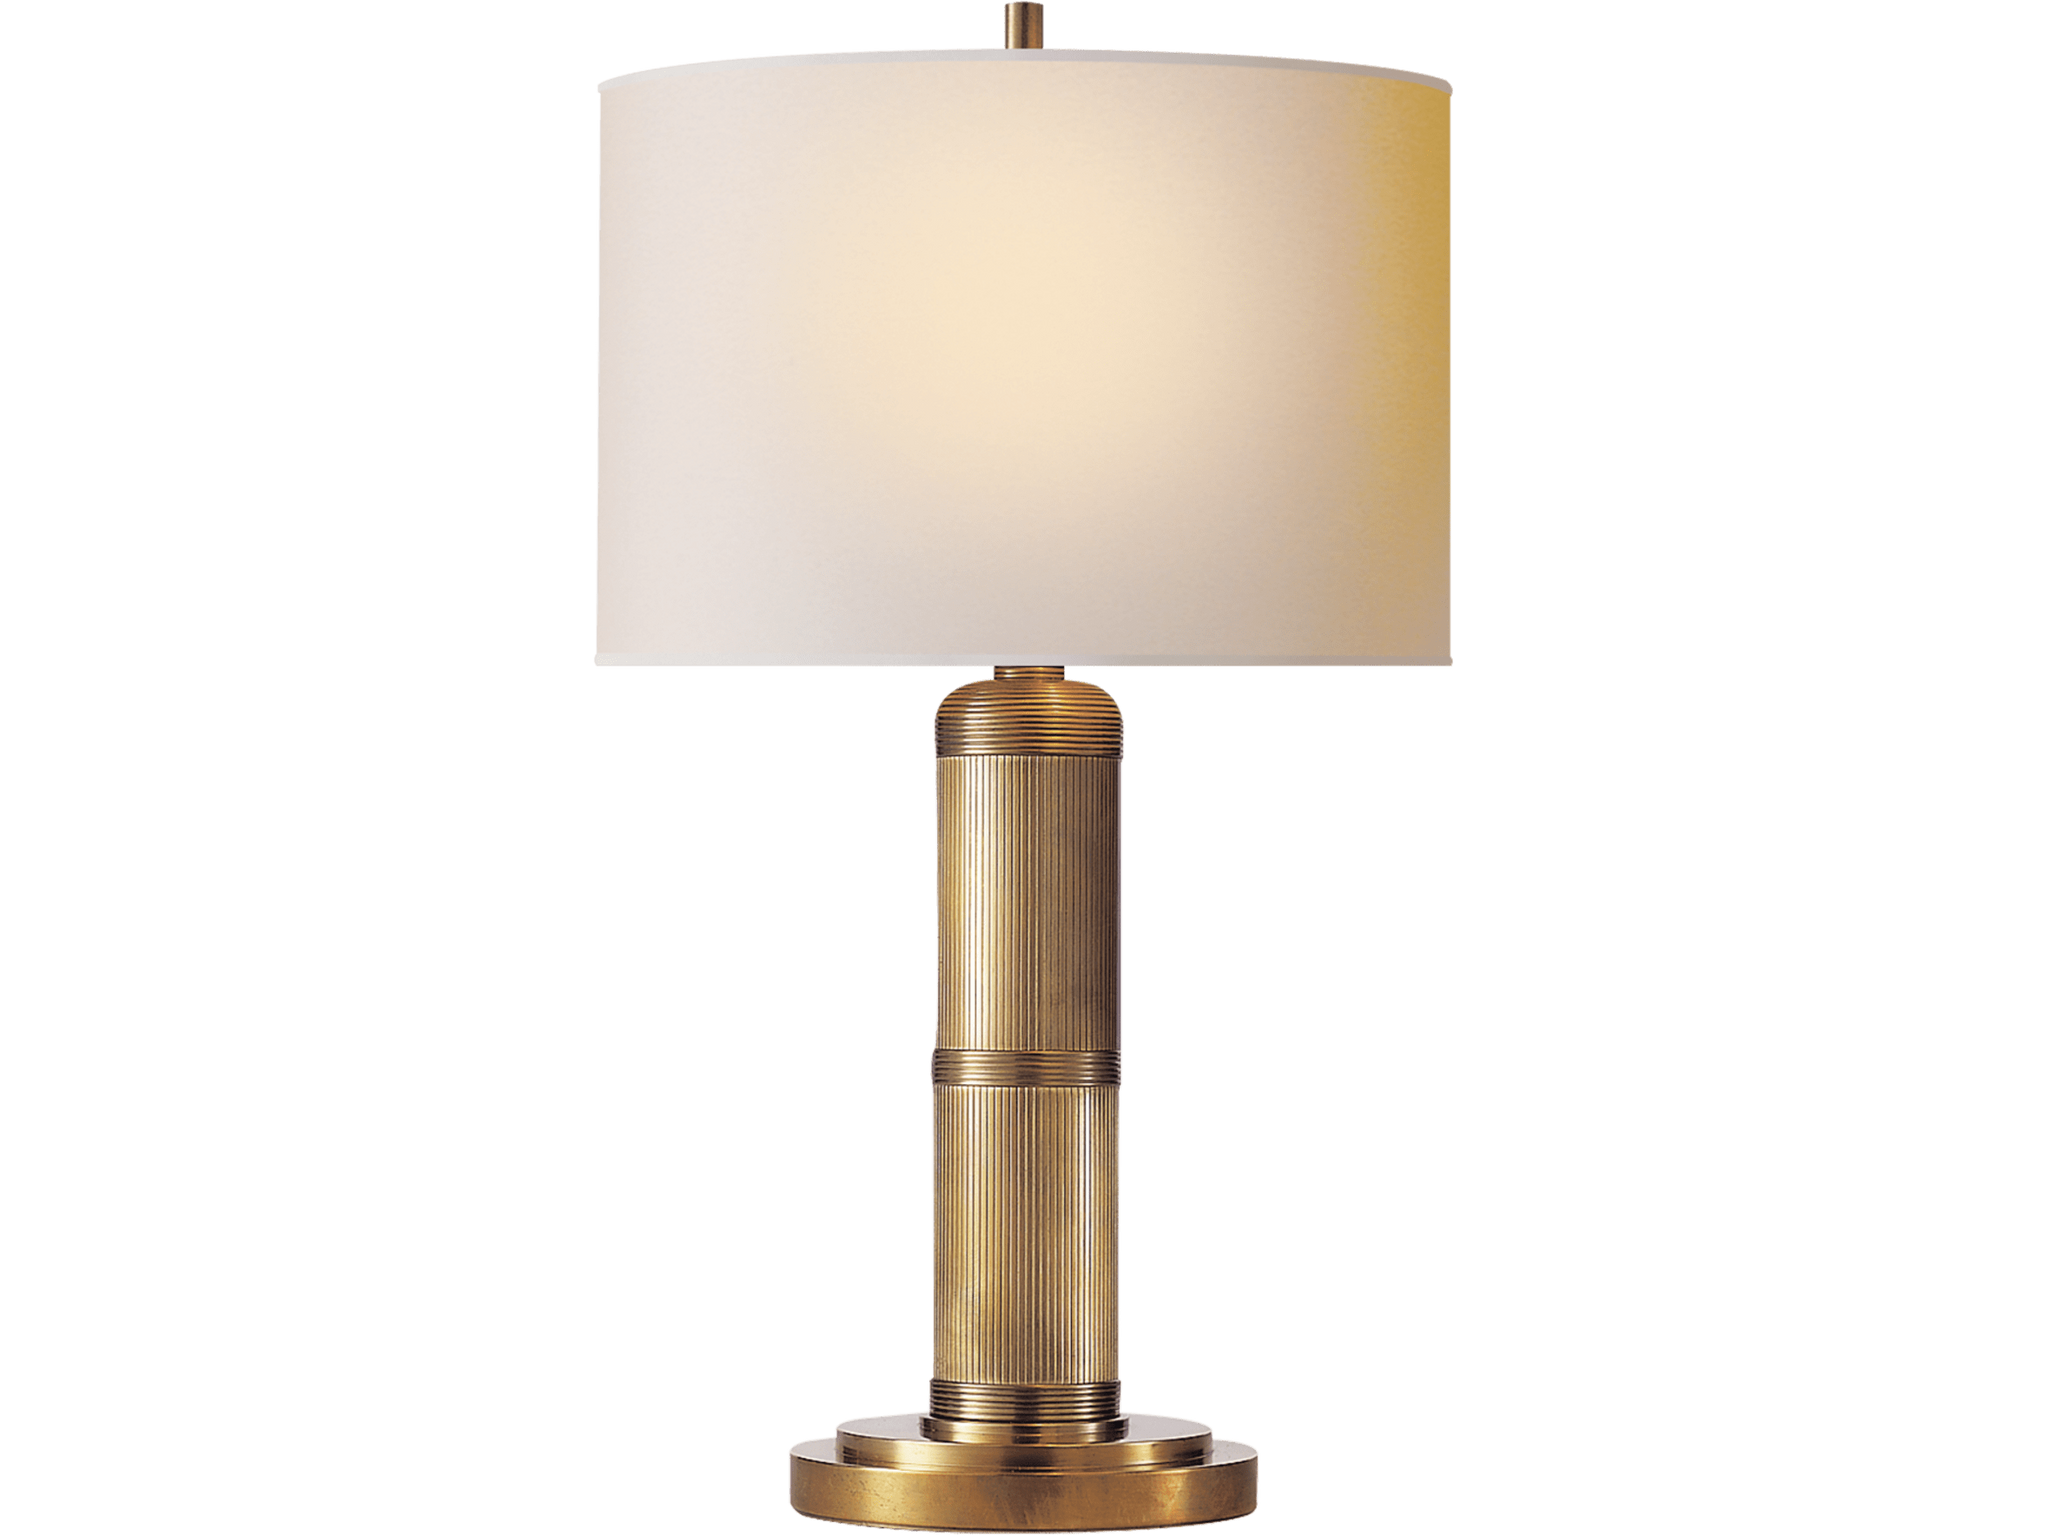 CIRCA LIGHTING - Longacre Small Table Lamp